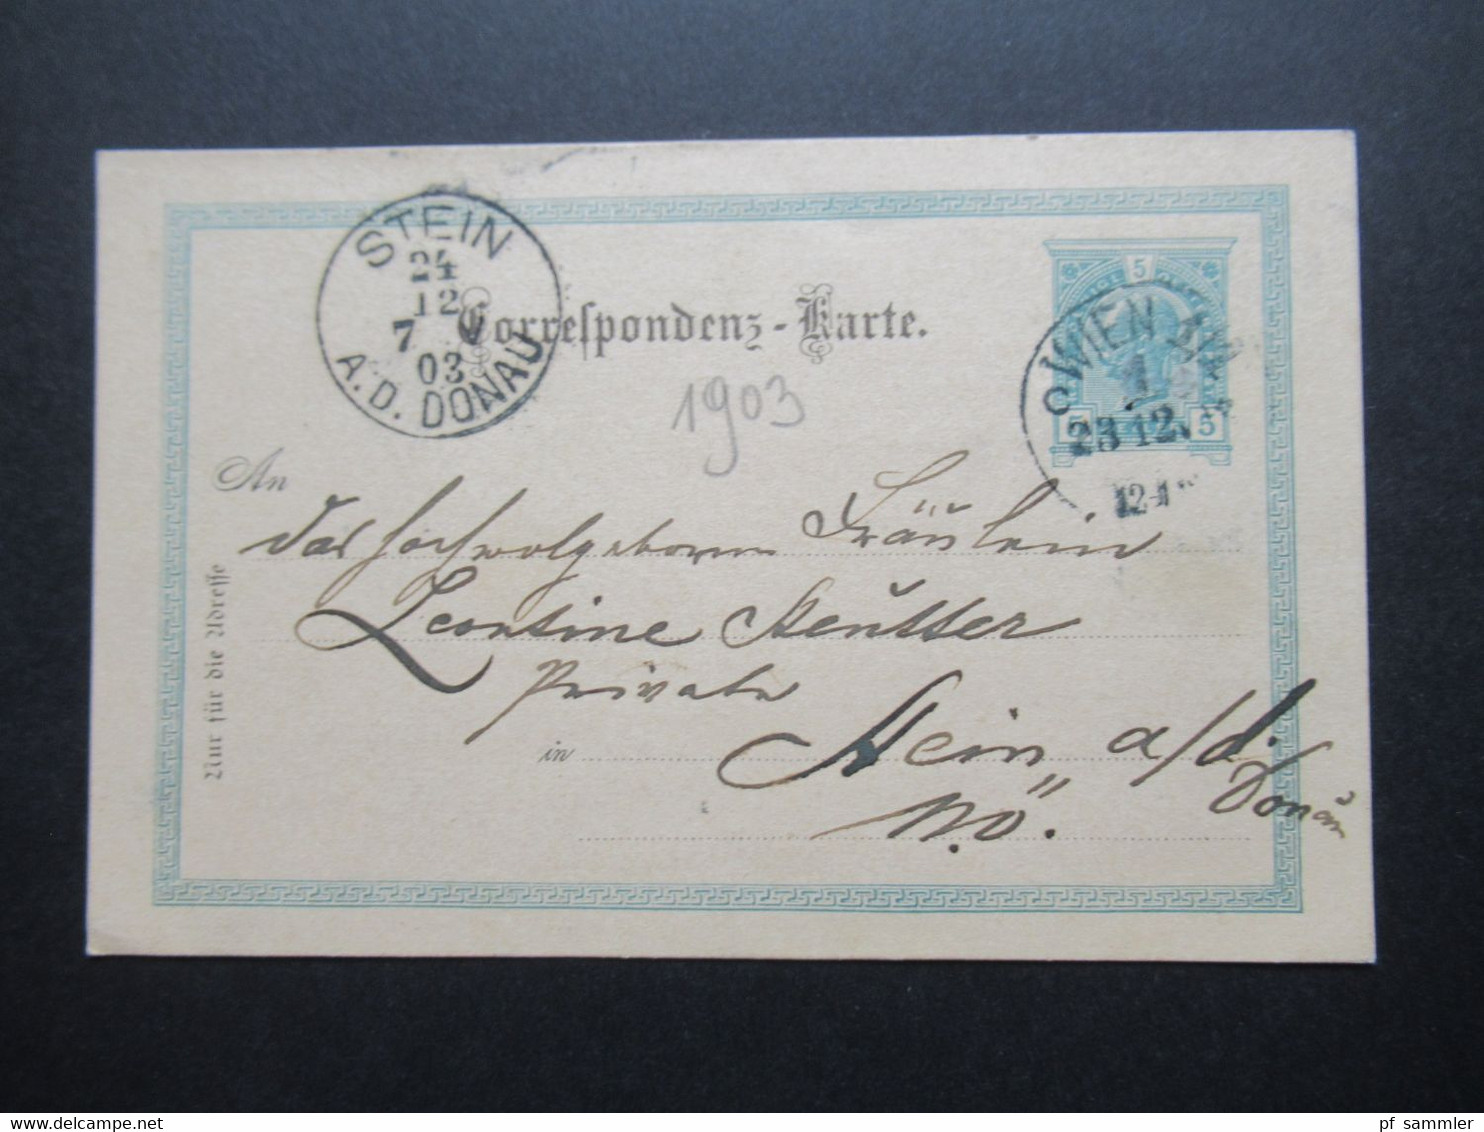 Österreich 1903 Ganzsache Correspondenz Karte Stempel Wien 23.12. Ank. Stp. K1 Stein A.D. Donau 24.12.1903 Weihnachten - Brieven En Documenten